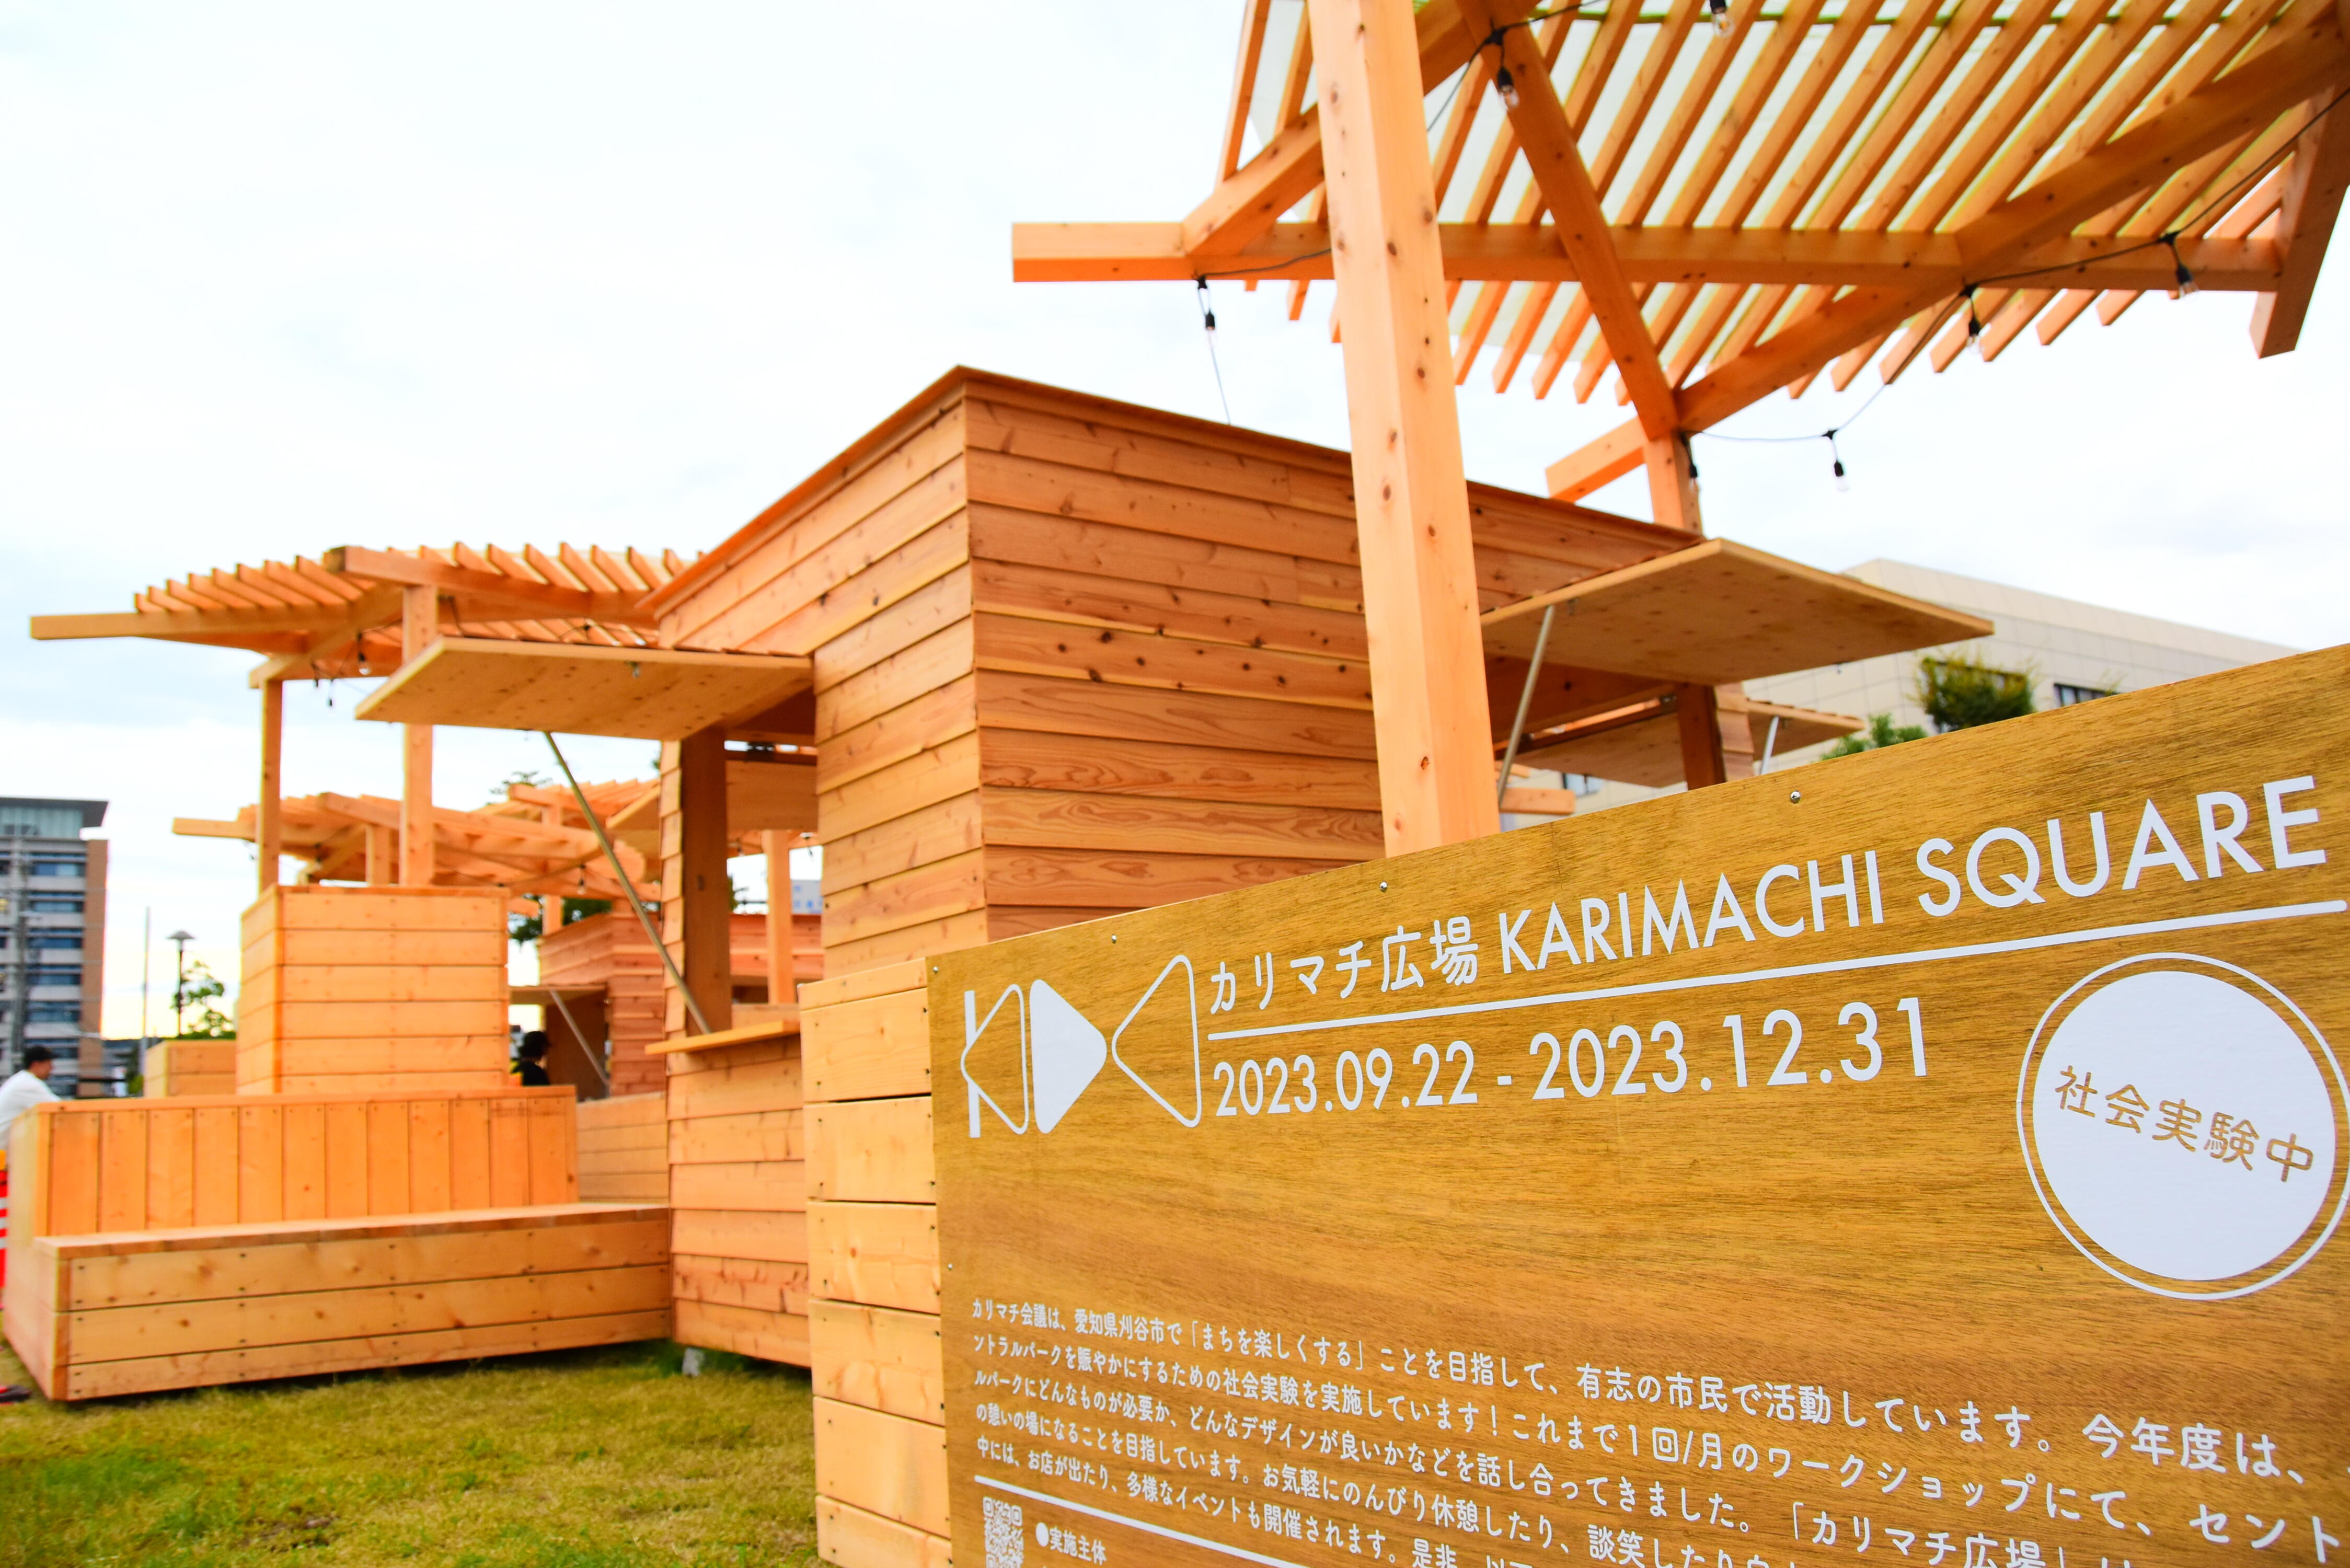 建築学科の佐藤研究室が刈谷市の大手公園で賑わい創出の社会実験